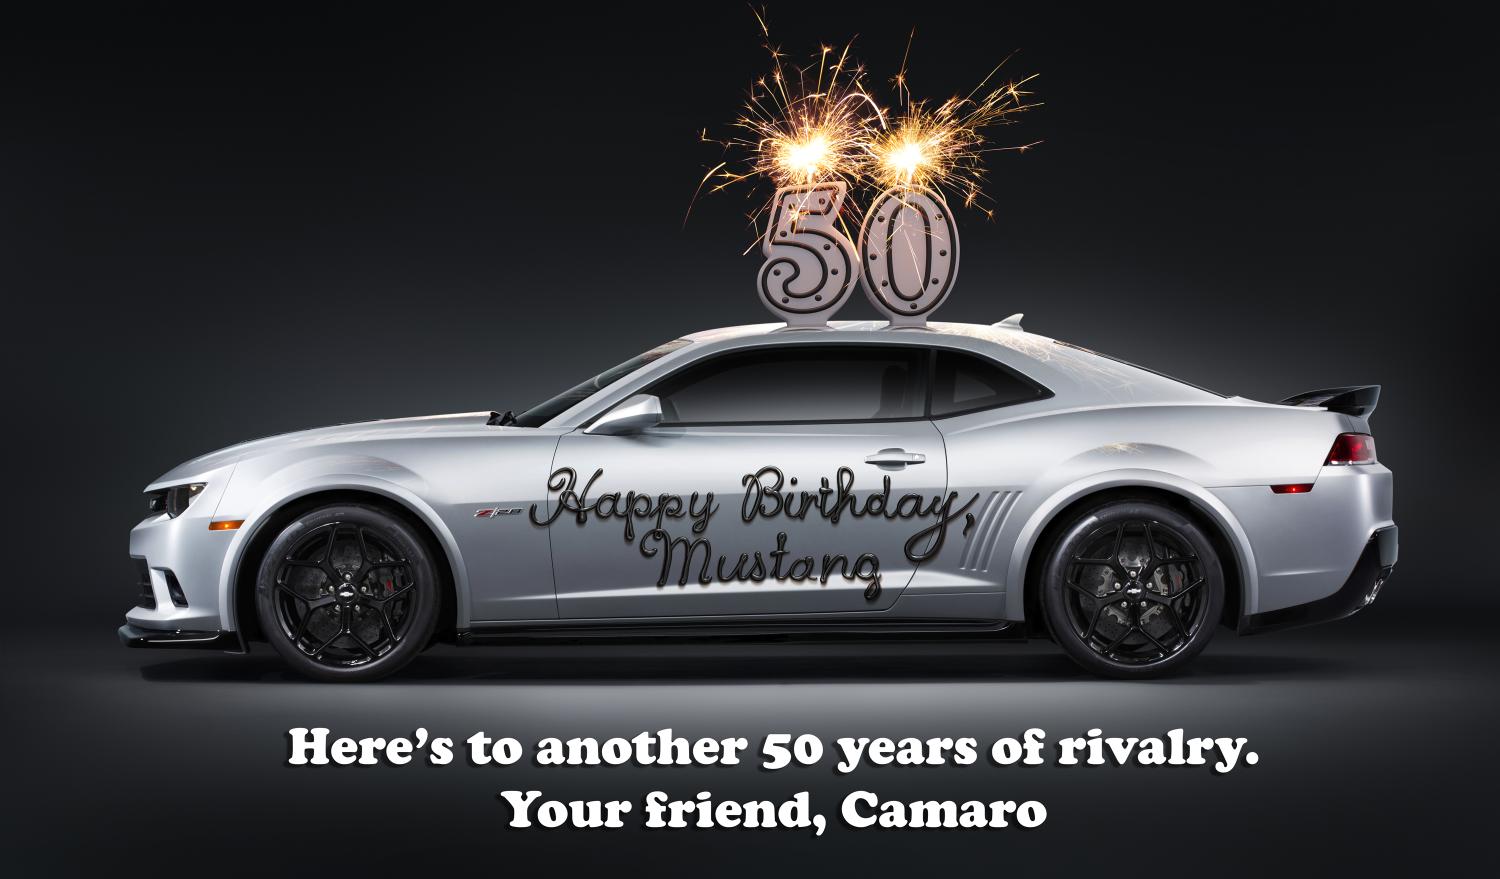 Camaro Kirimkan Kartu Ucapan Ulang Tahun Yang Unik Untuk Mustang